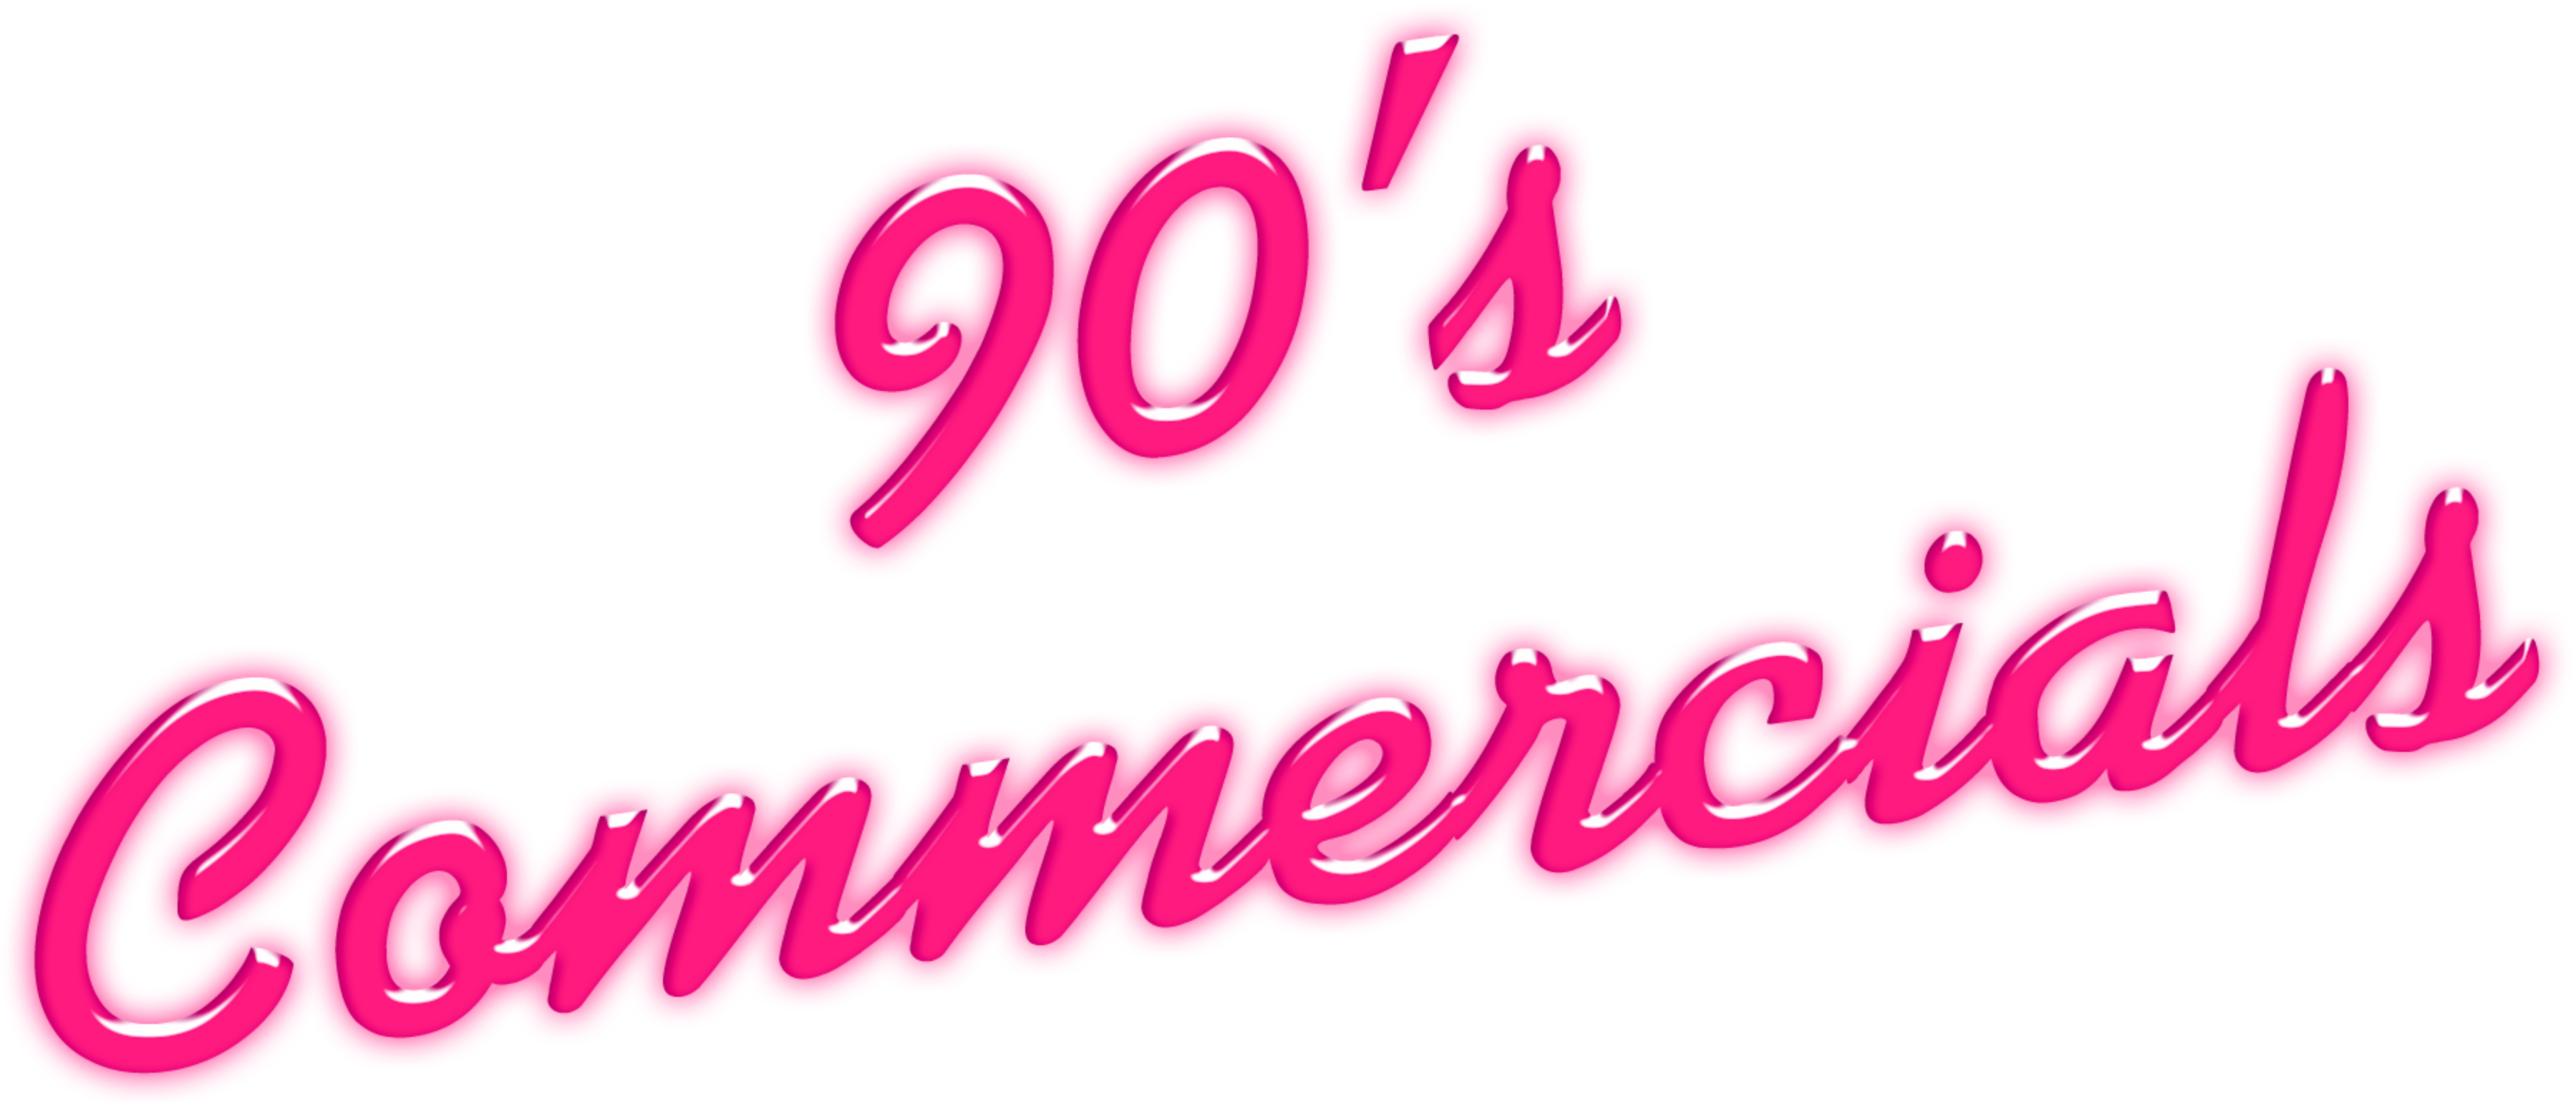 90's Commercials Disc 21